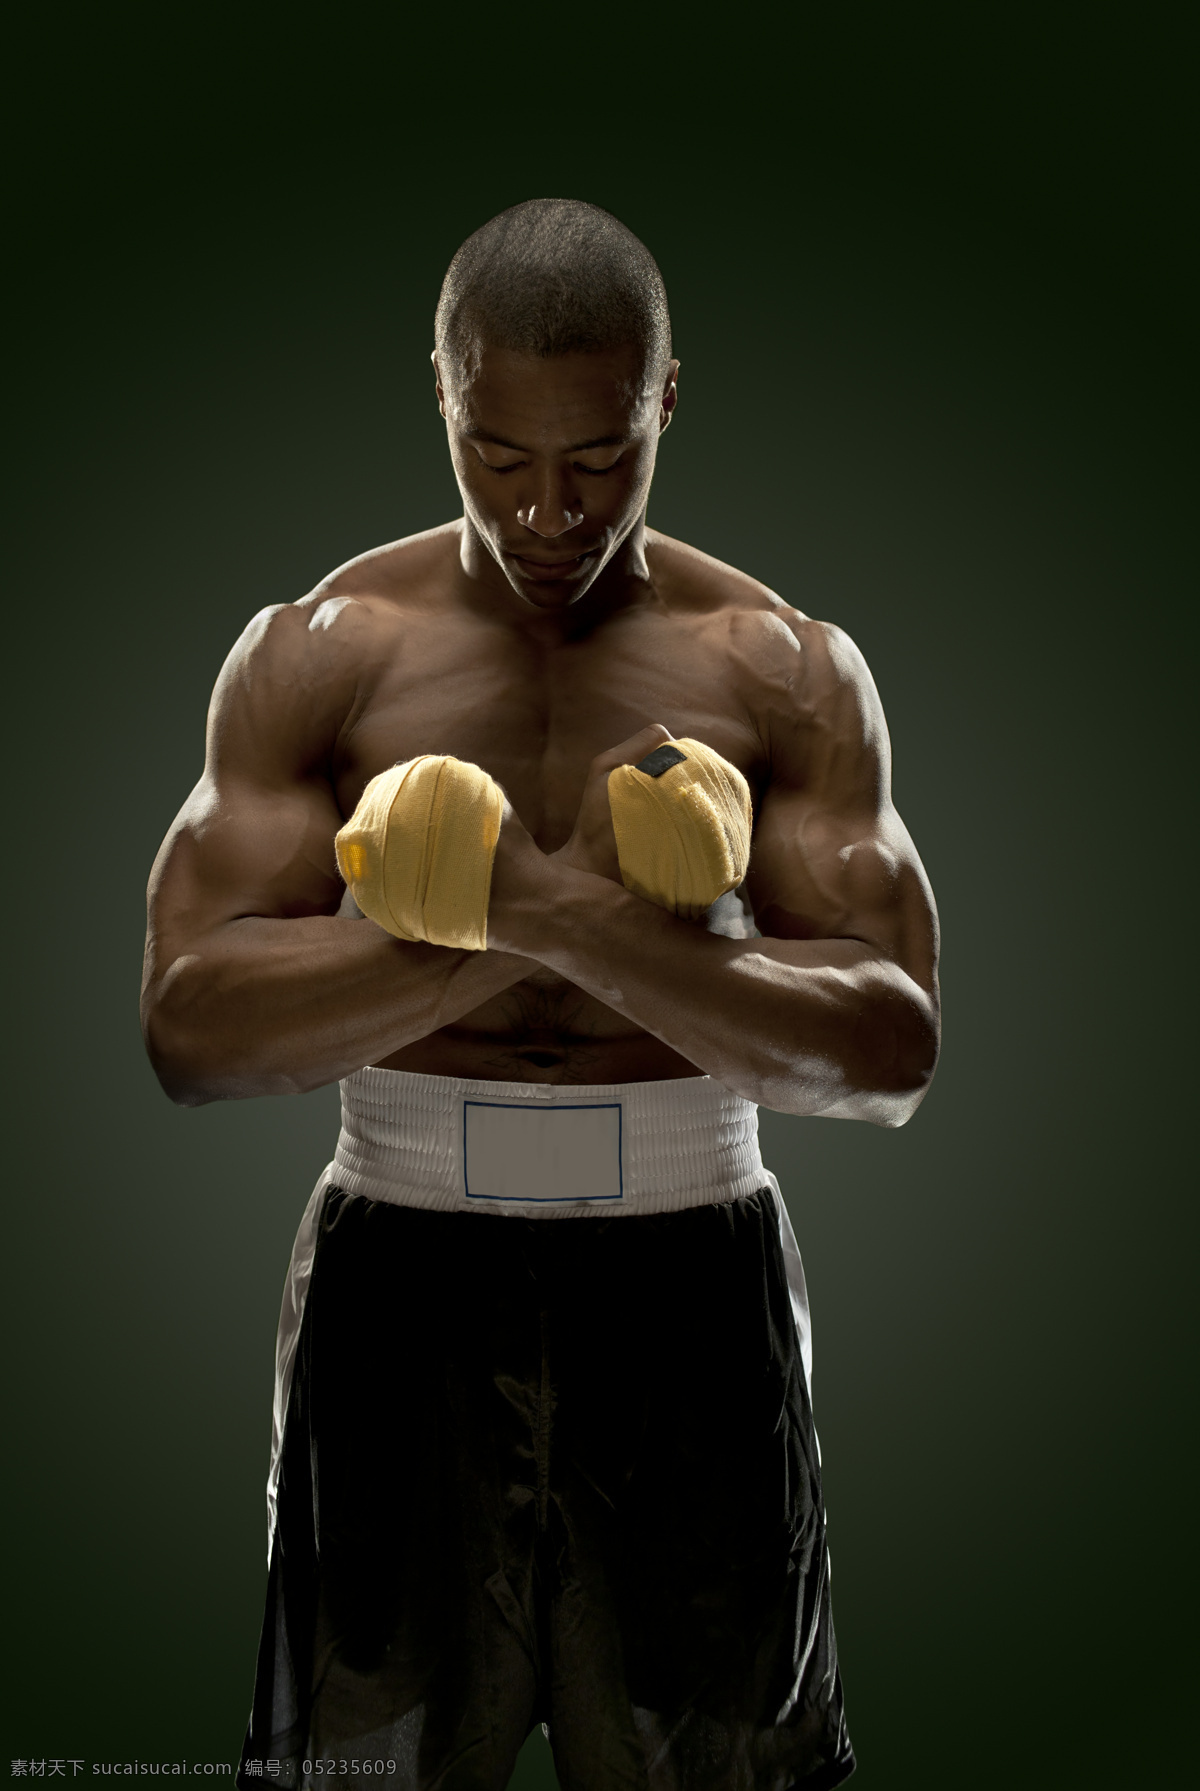 拳击 运动员 拳击手 拳击手套 体育运动 拳击运动员 运动项目 肌肉男 男人 男人图片 人物图片